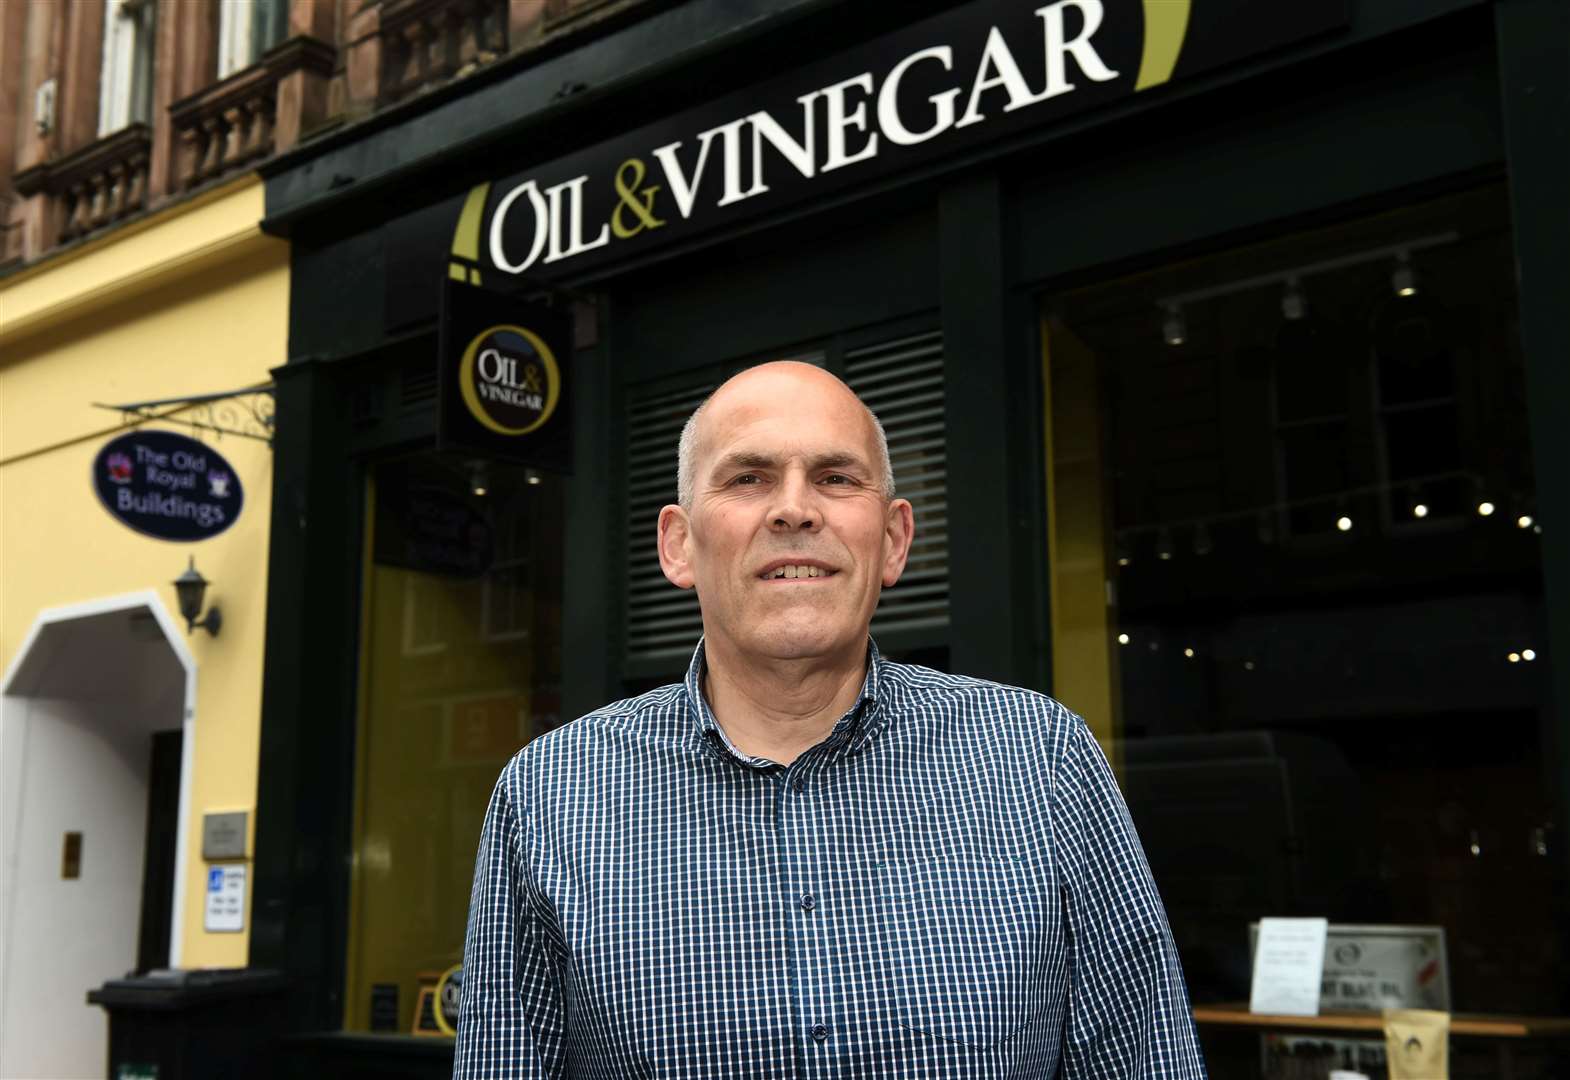 Colin Craig (59) outside Oil and Vinegar, Inverness....Picture: Callum Mackay..